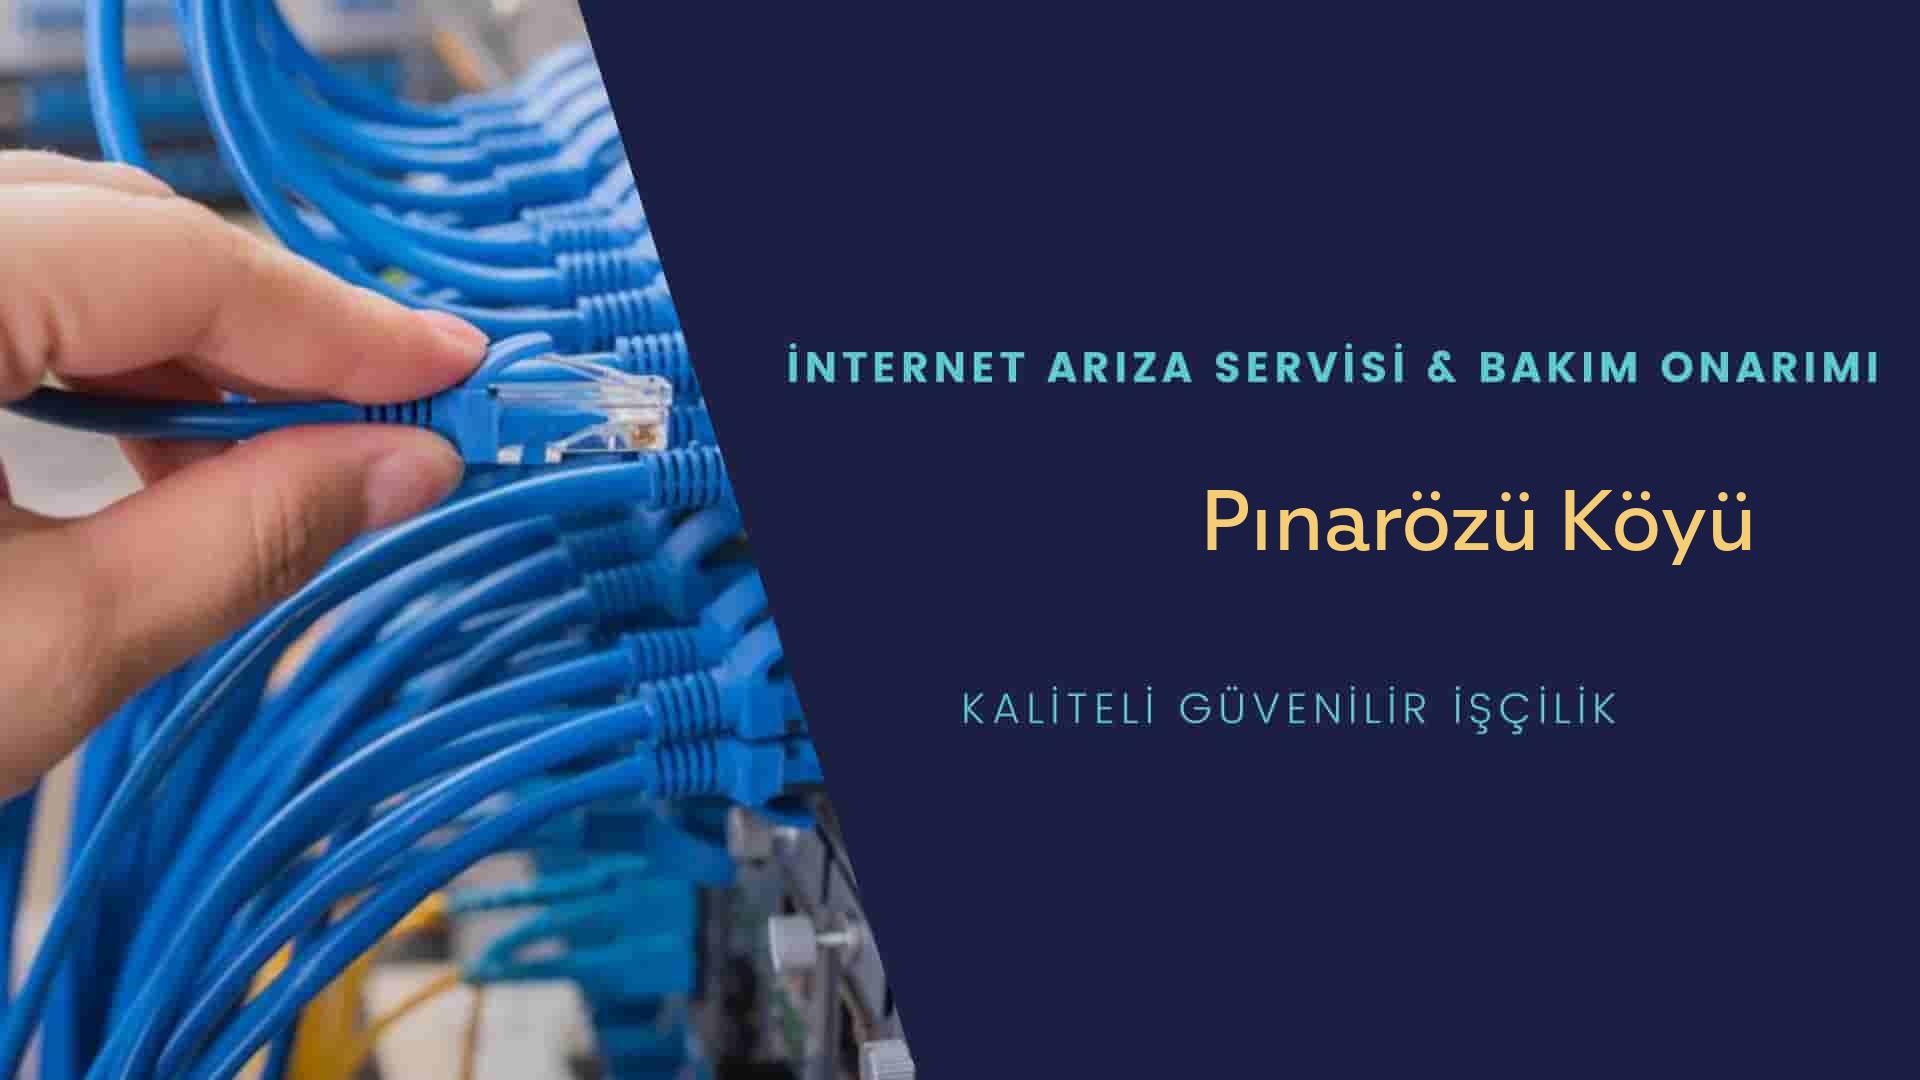 Pınarözü Köyü internet kablosu çekimi yapan yerler veya elektrikçiler mi? arıyorsunuz doğru yerdesiniz o zaman sizlere 7/24 yardımcı olacak profesyonel ustalarımız bir telefon kadar yakındır size.